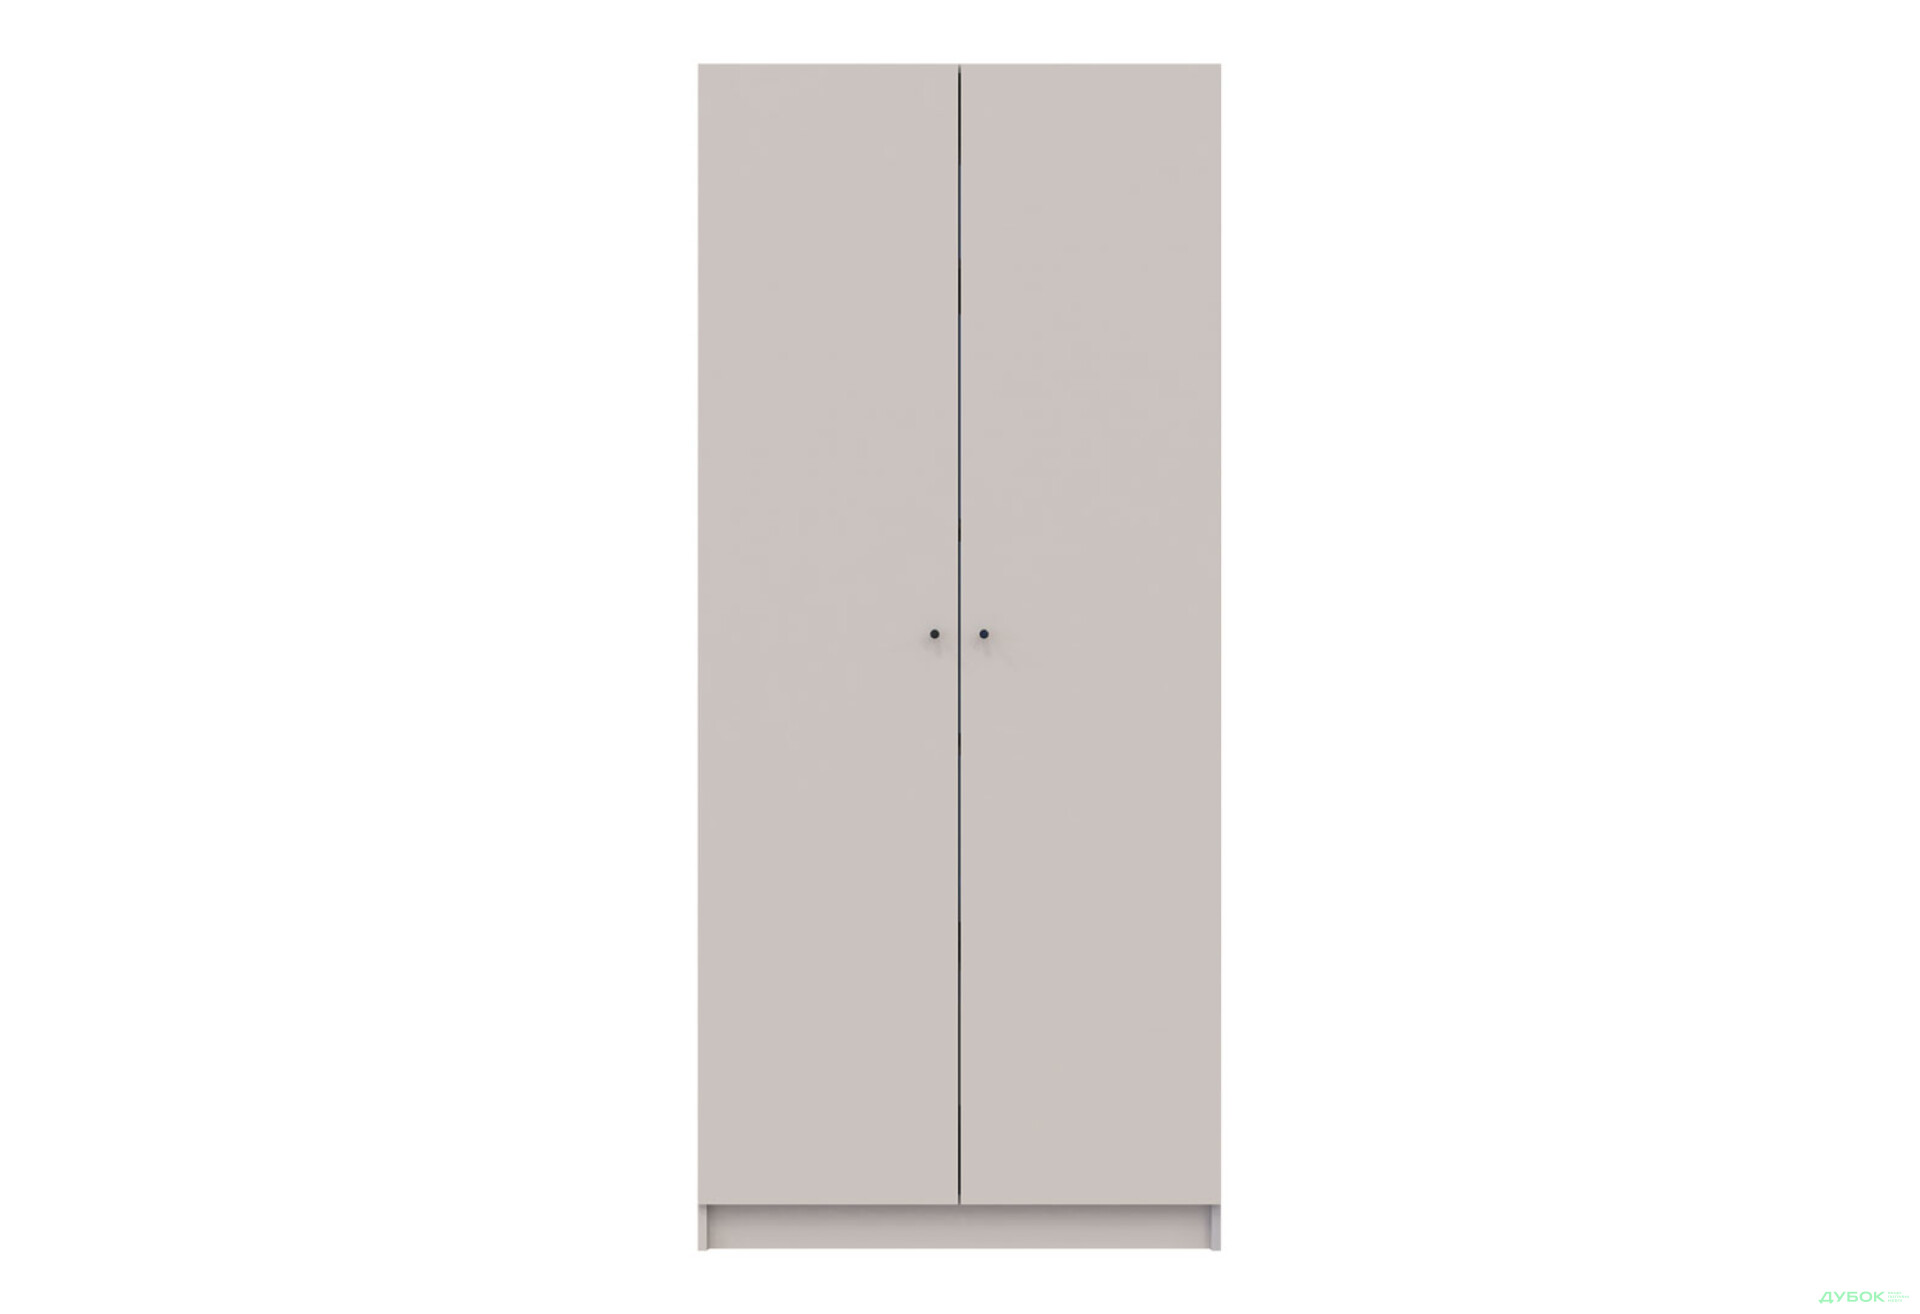 Фото 2 - Шкаф для одежды Doros Promo / Промо 2 ДСП 2-дверный 90 см, кашемир